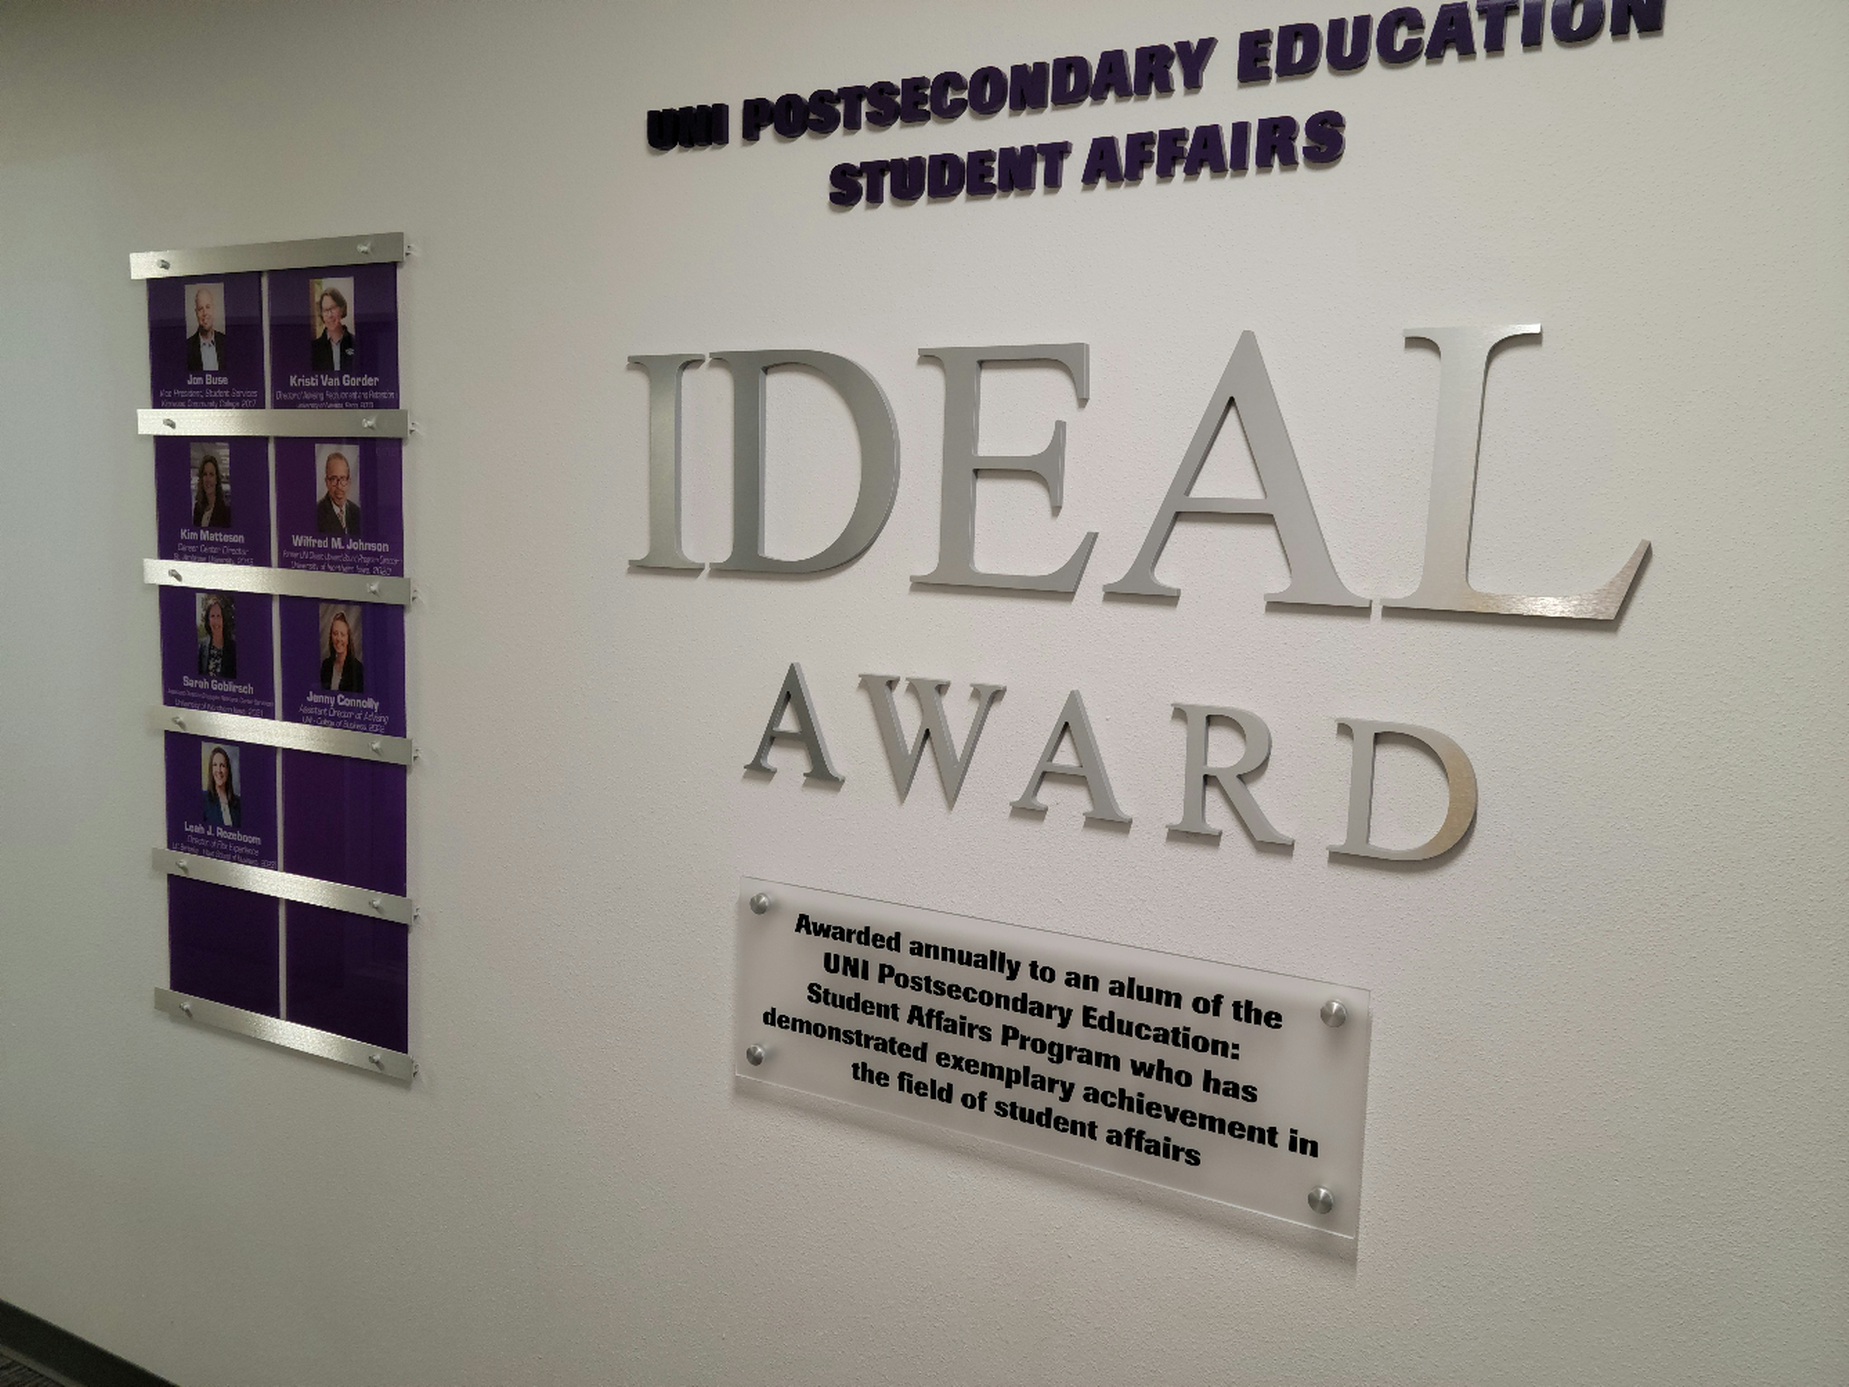 IDEAL Award Wall Display